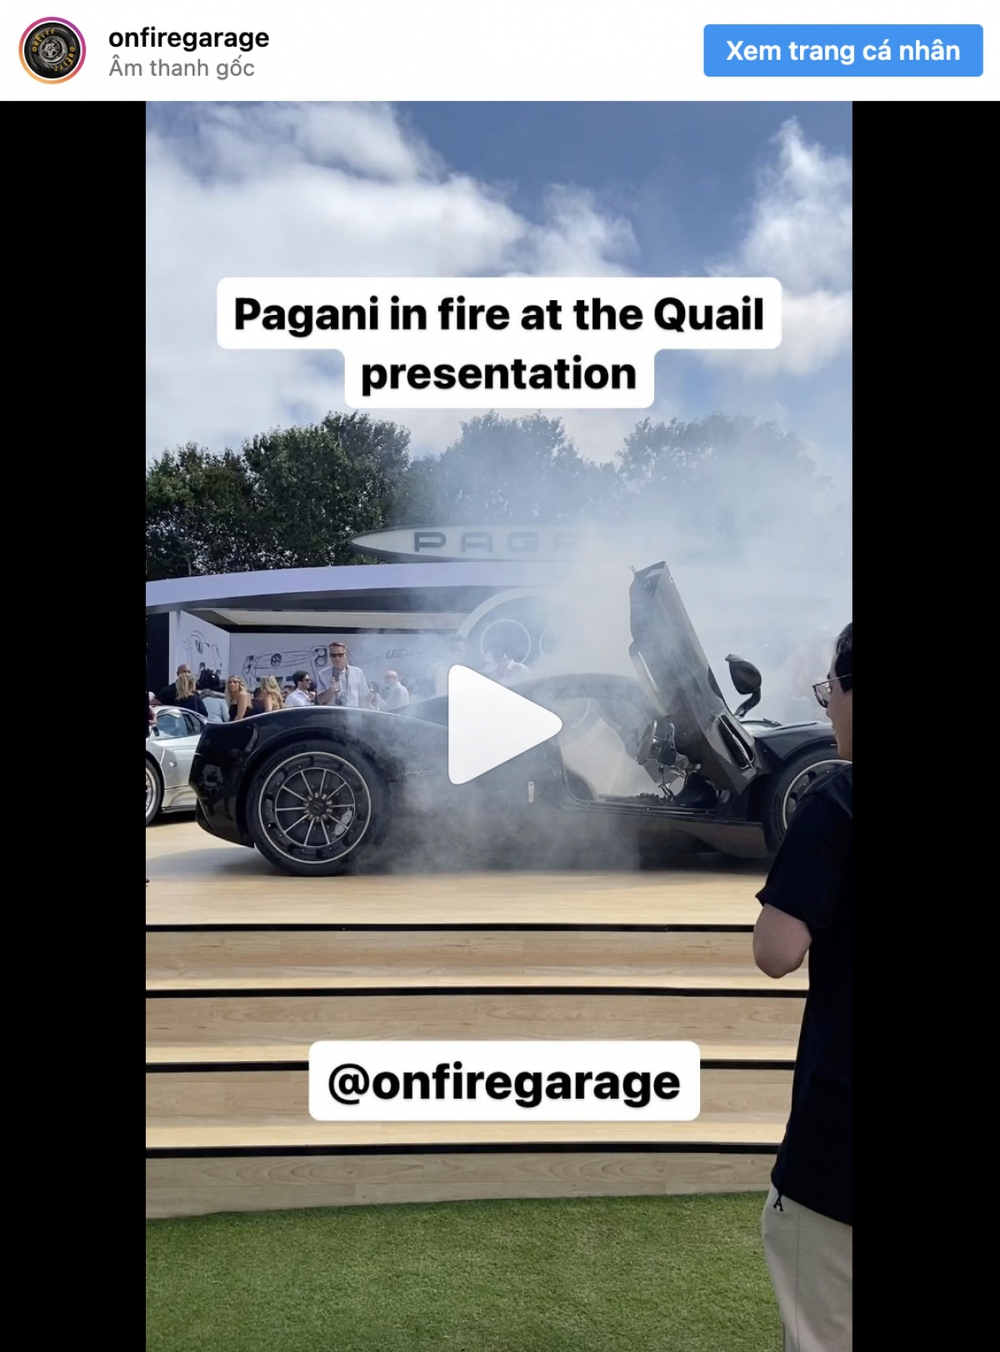 Siêu xe Pagani Utopia bất ngờ bốc khói tại sự kiện ở Monterey - Ảnh 2.